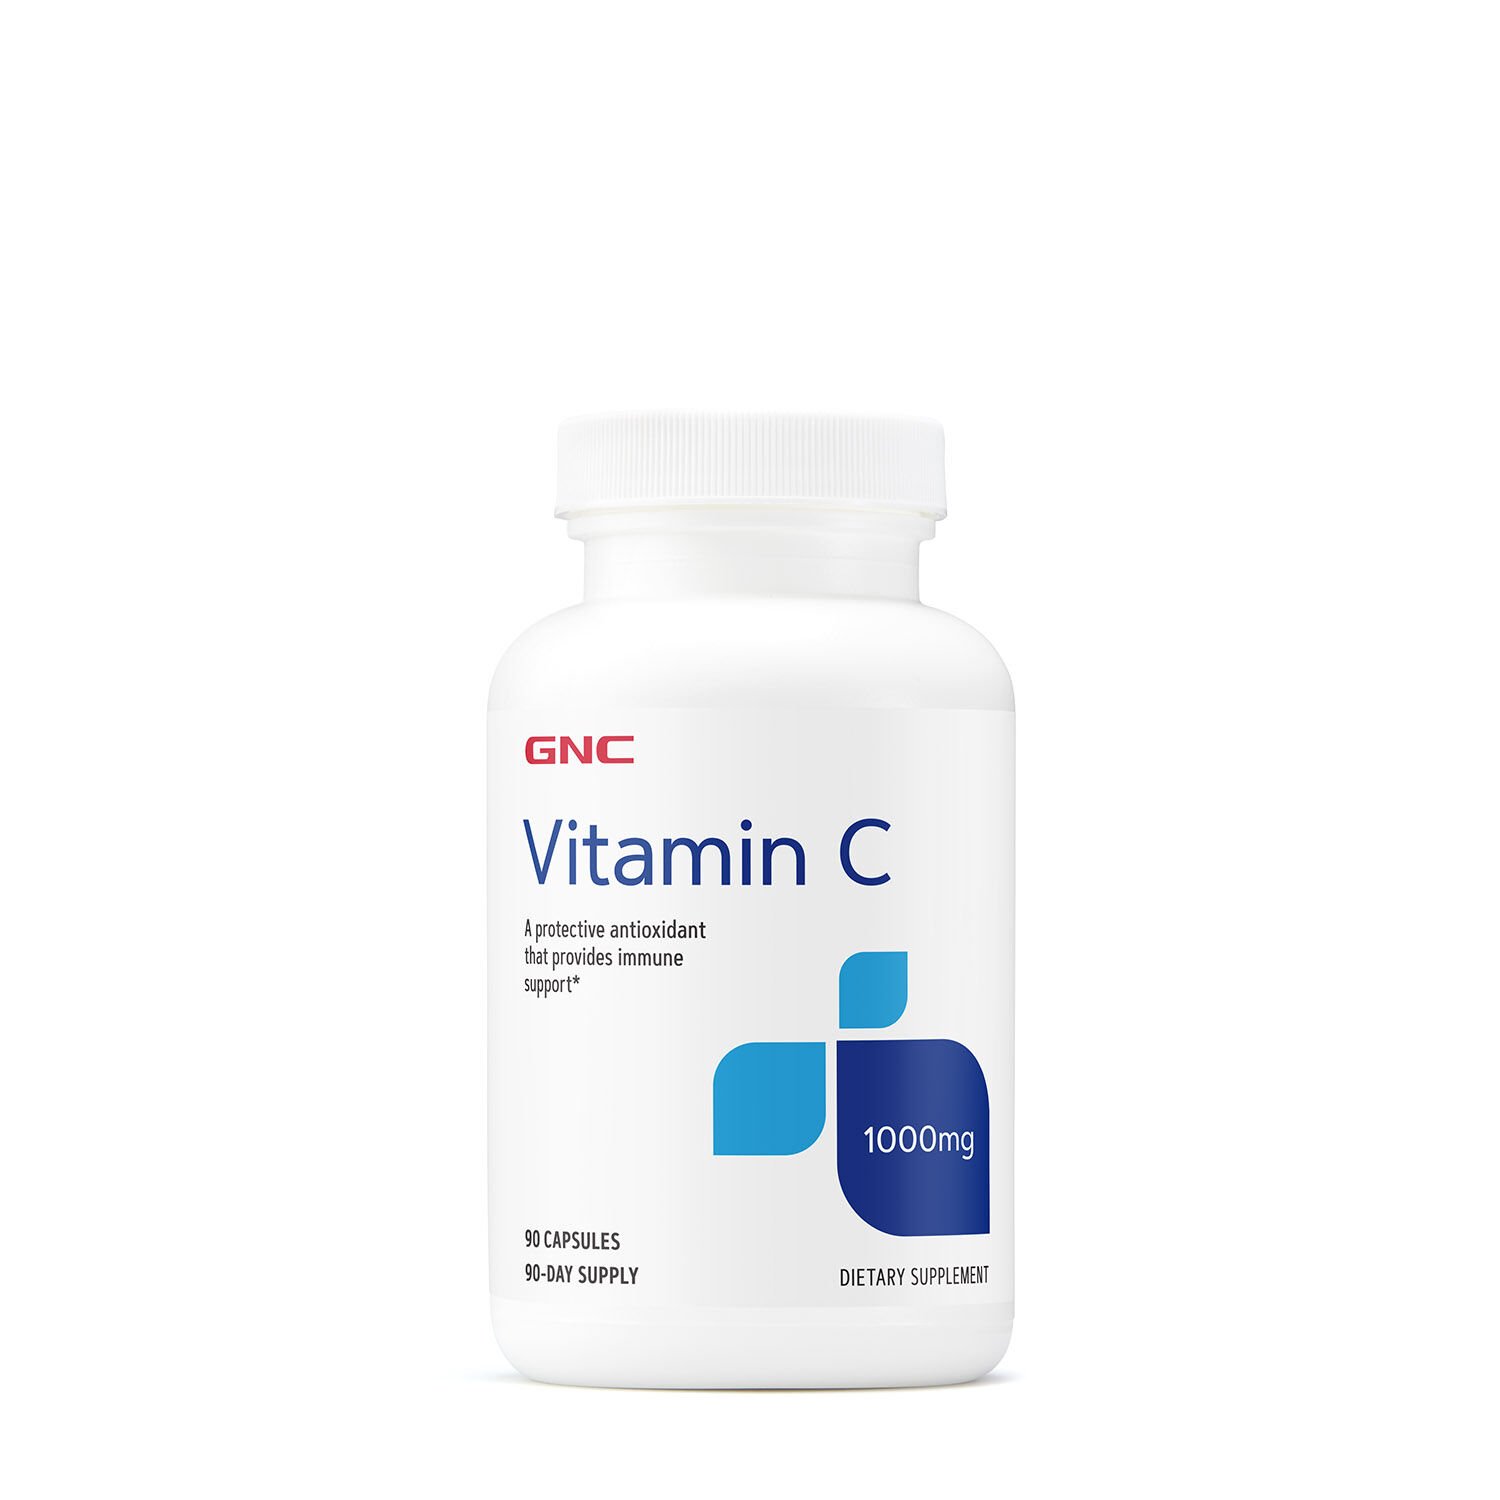 Витамины и минералы GNC Vitamin C 1000 mg, 90 капсул,  мл, GNC. Витамины и минералы. Поддержание здоровья Укрепление иммунитета 